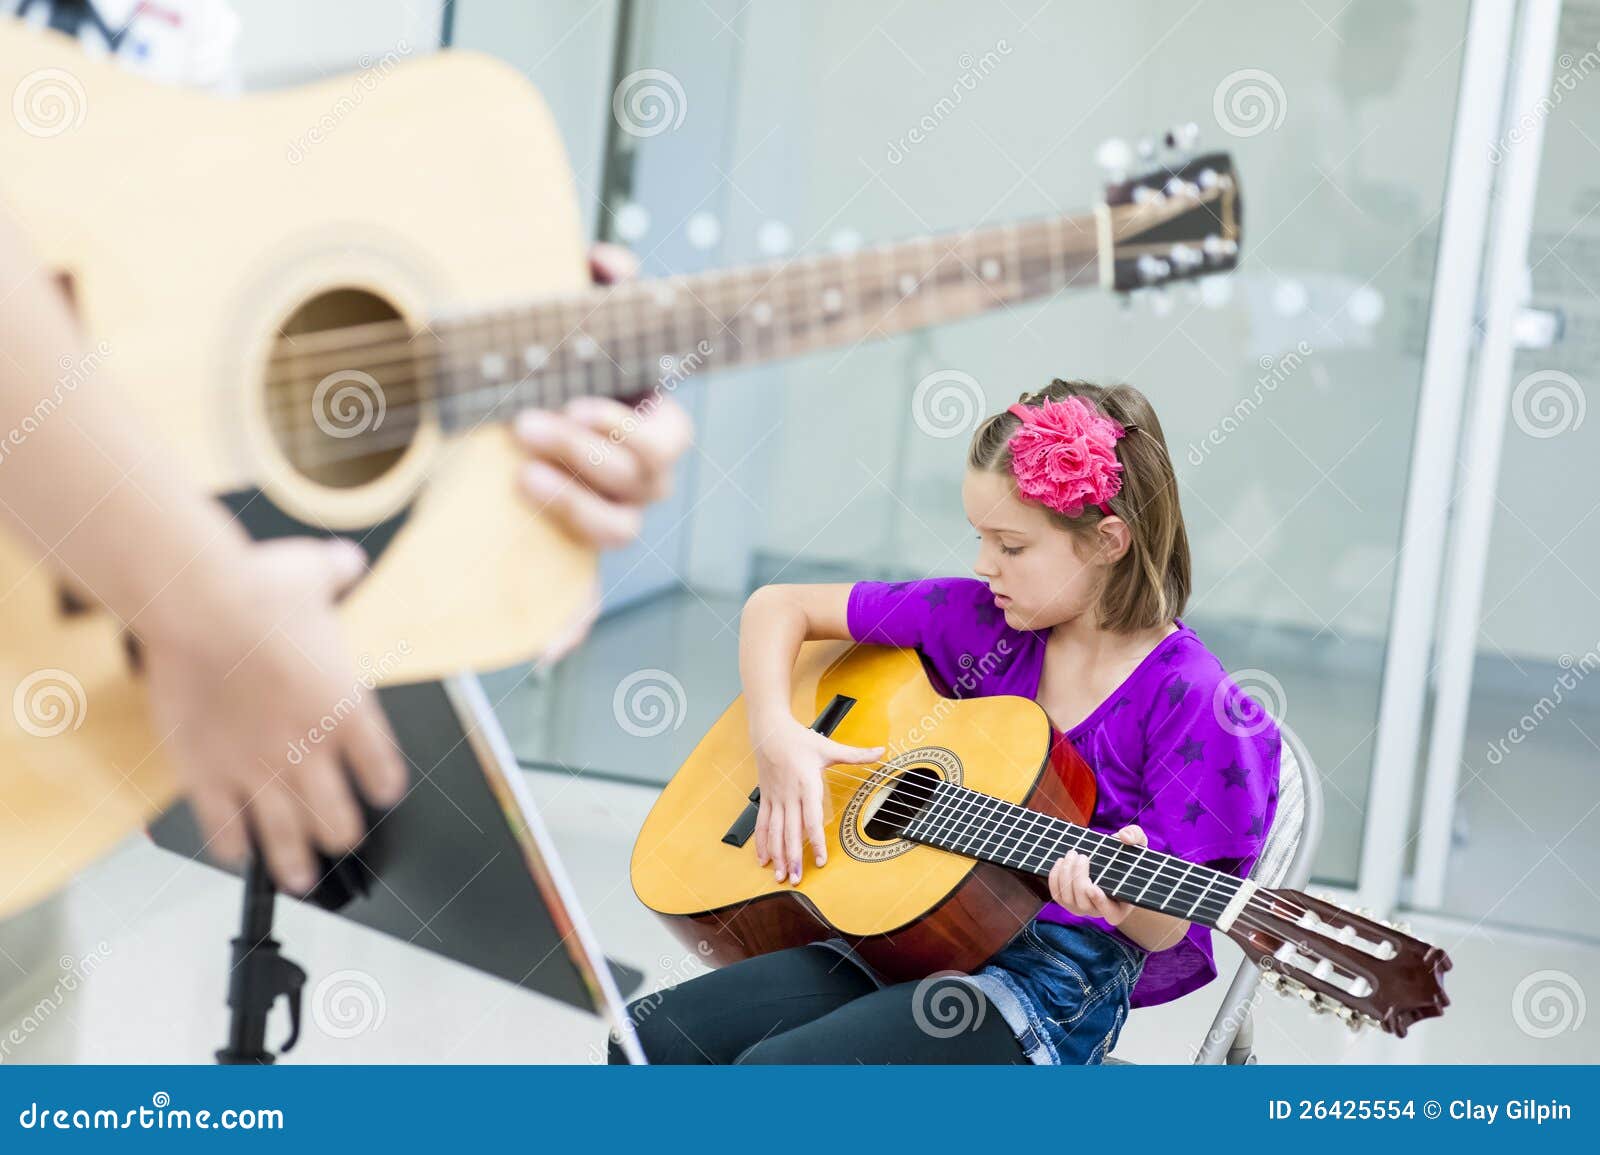 guitar lesson